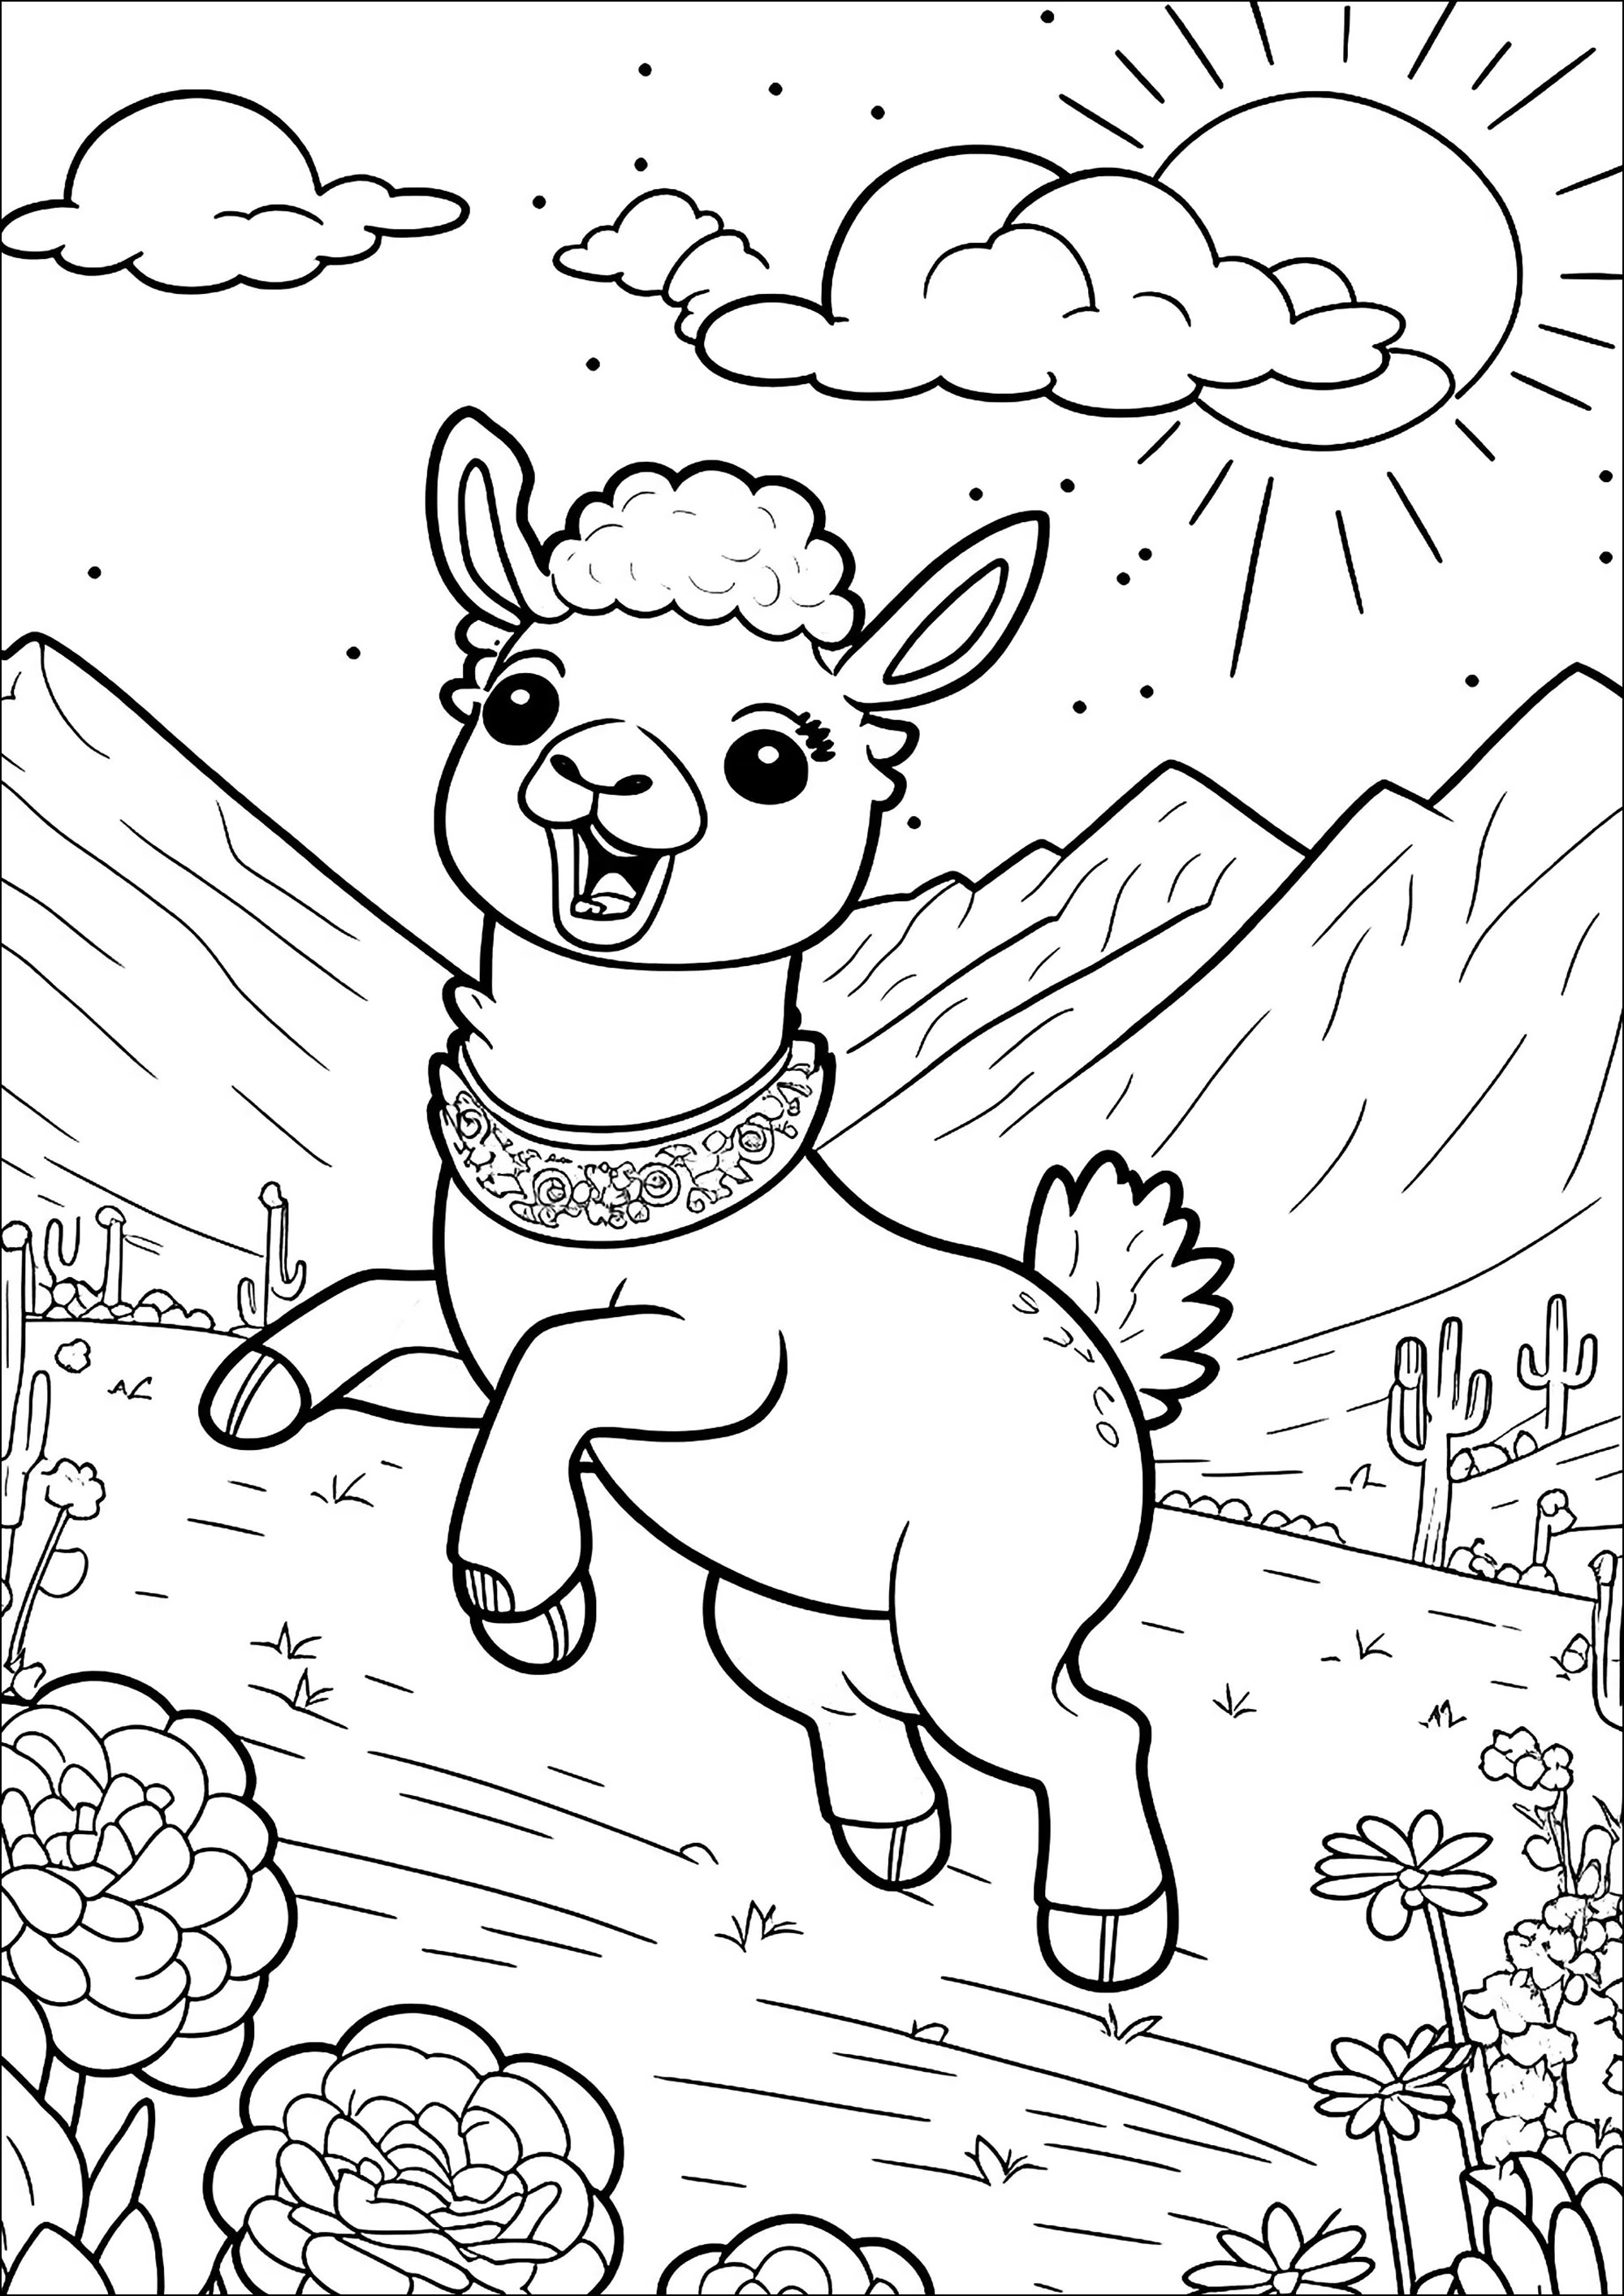 Dibujos para colorear para niños de Llamas para imprimir